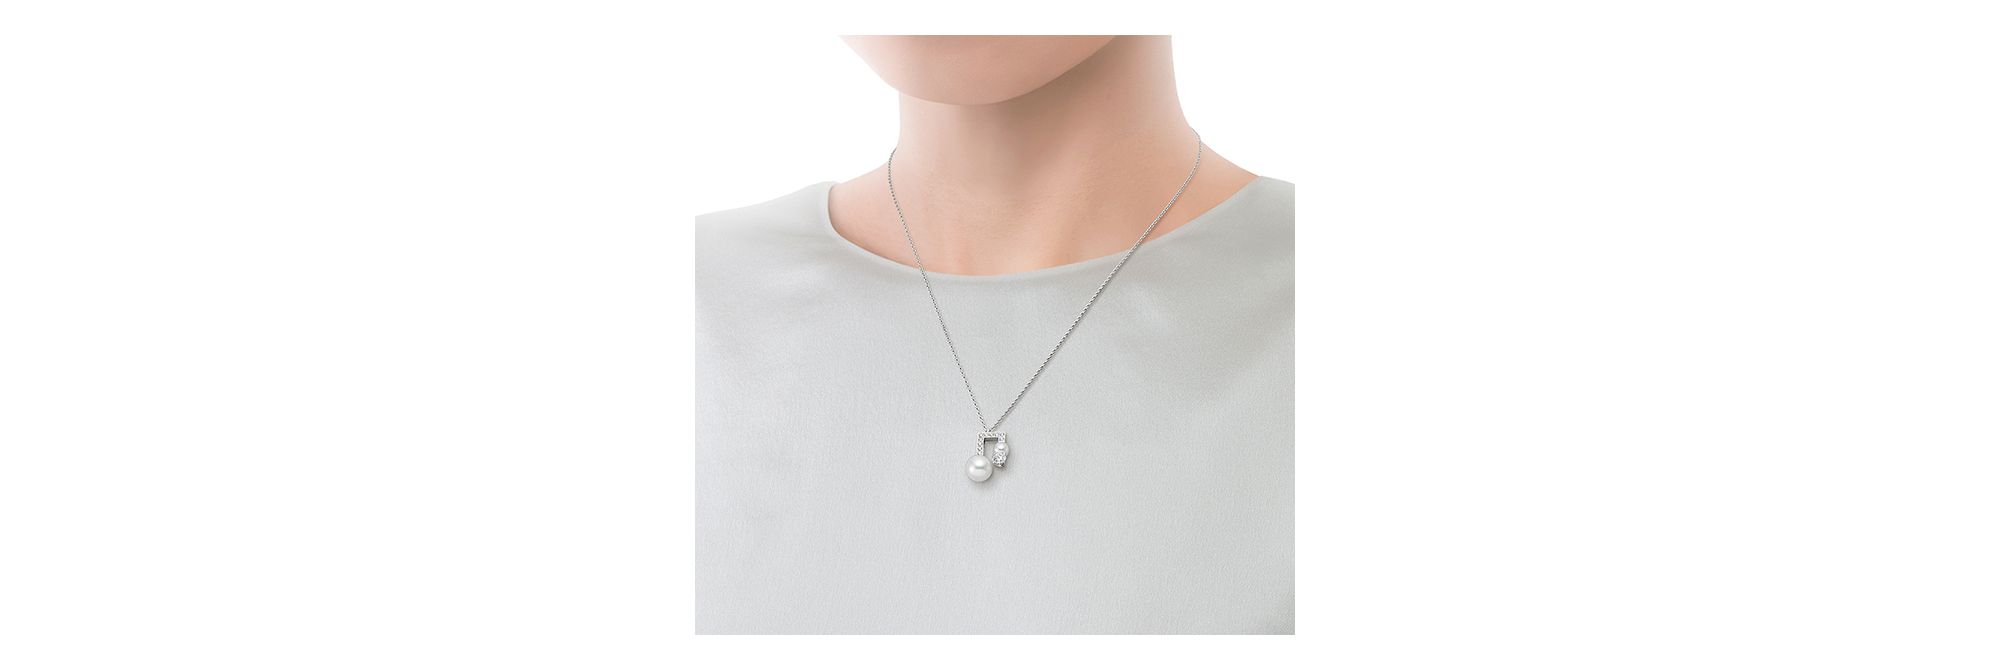 田崎真珠   ダイヤモンド 1.65 ペンダント・ネックレスネックレス